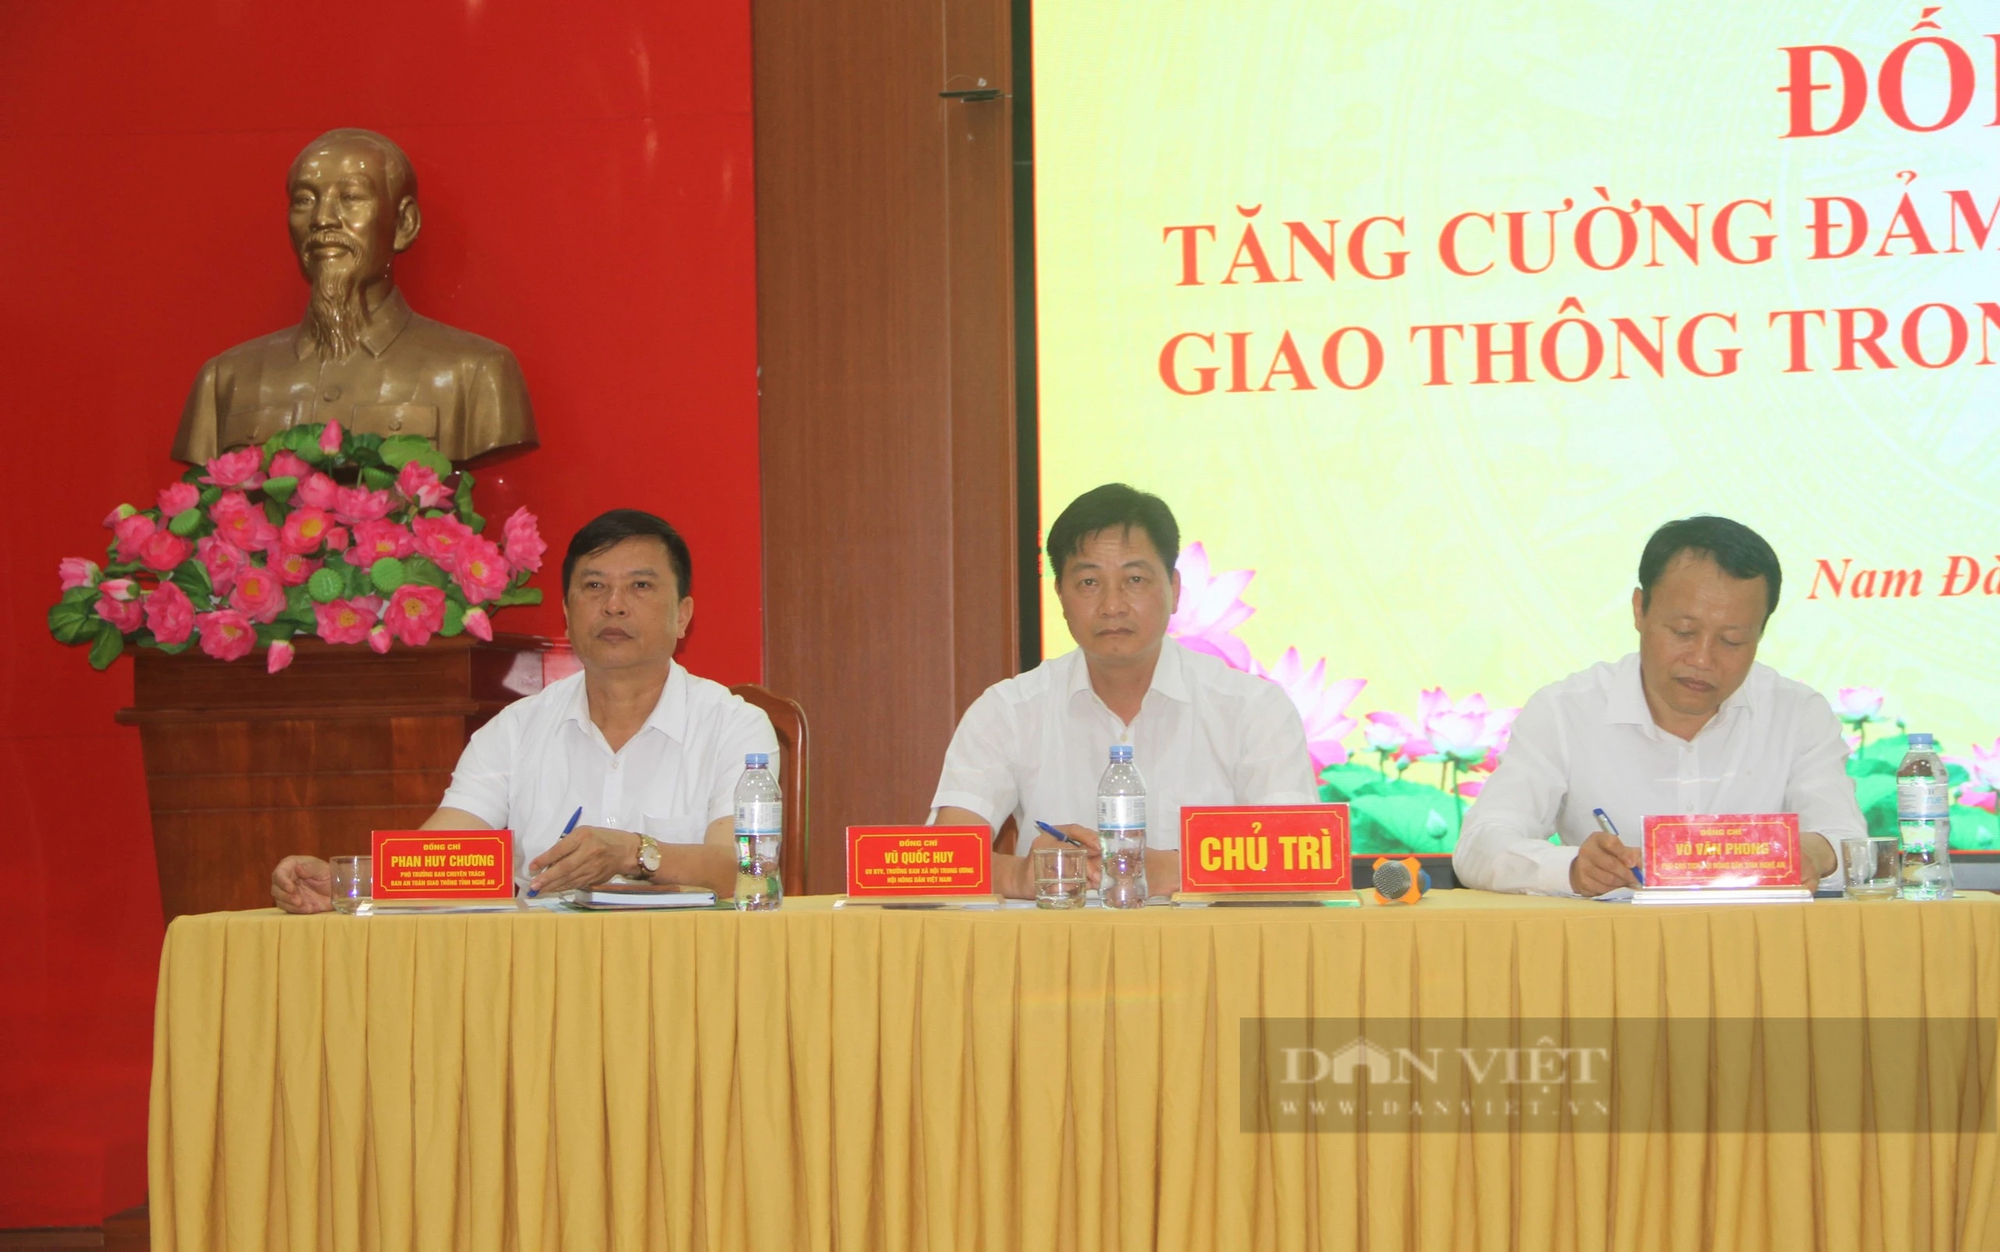 Nông dân Nghệ An cùng tìm giải pháp tăng cường đảm bảo an toàn giao thông nông thôn- Ảnh 3.